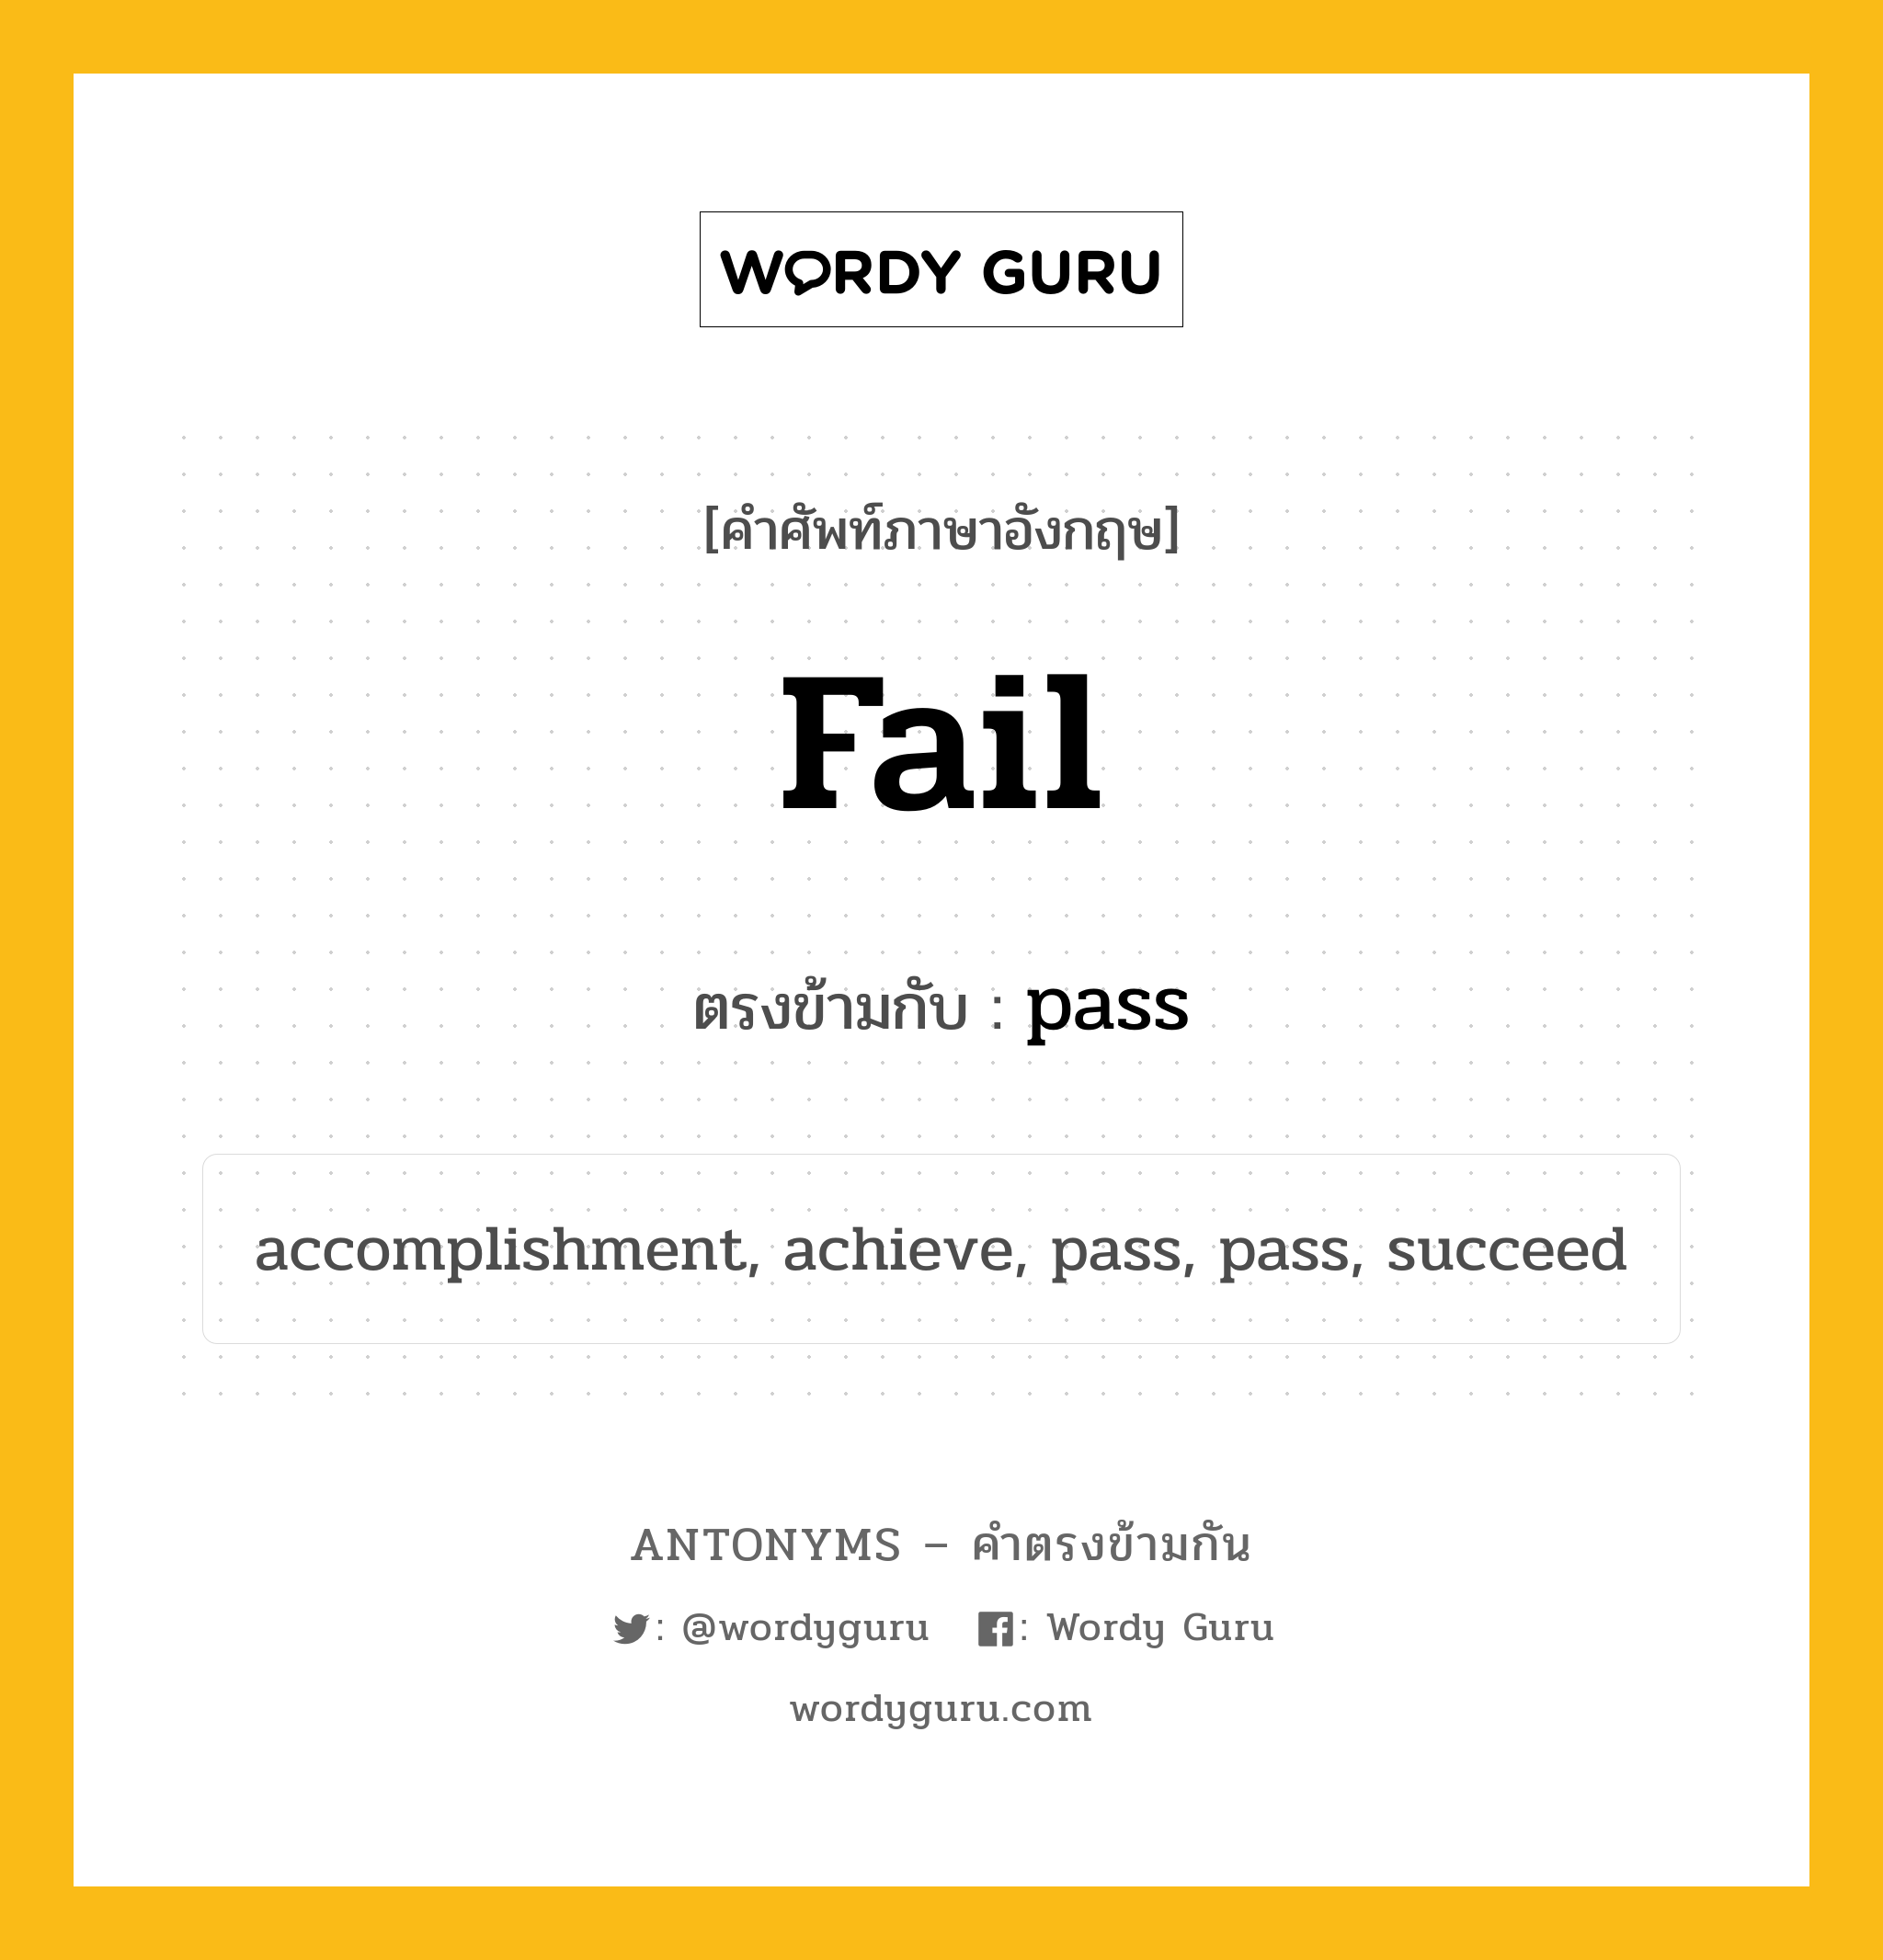 fail เป็นคำตรงข้ามกับคำไหนบ้าง?, คำศัพท์ภาษาอังกฤษ fail ตรงข้ามกับ pass หมวด pass